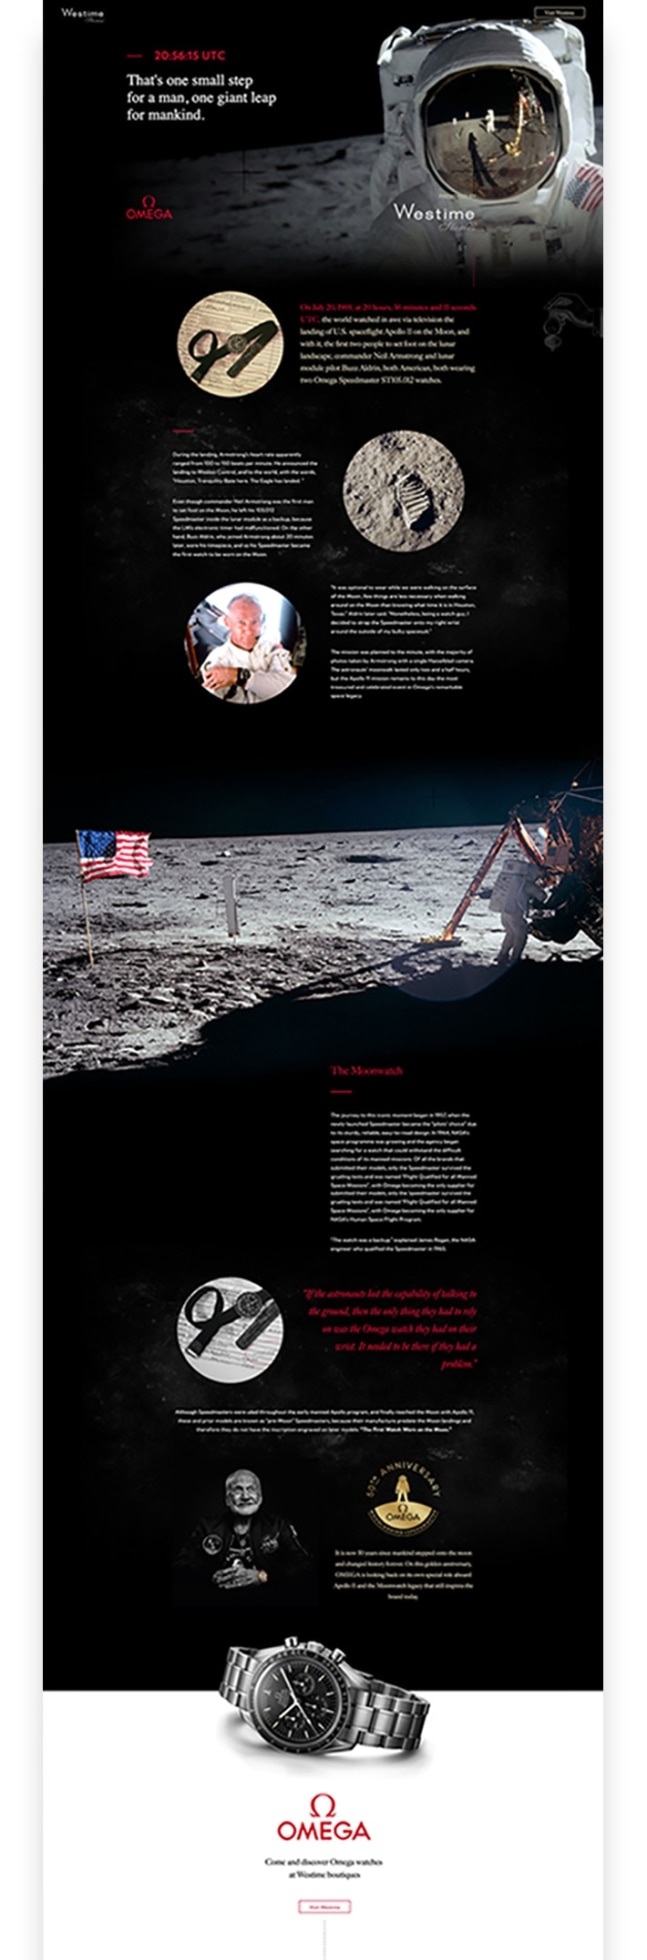 westime-stories-omega-landing-page-design.jpg